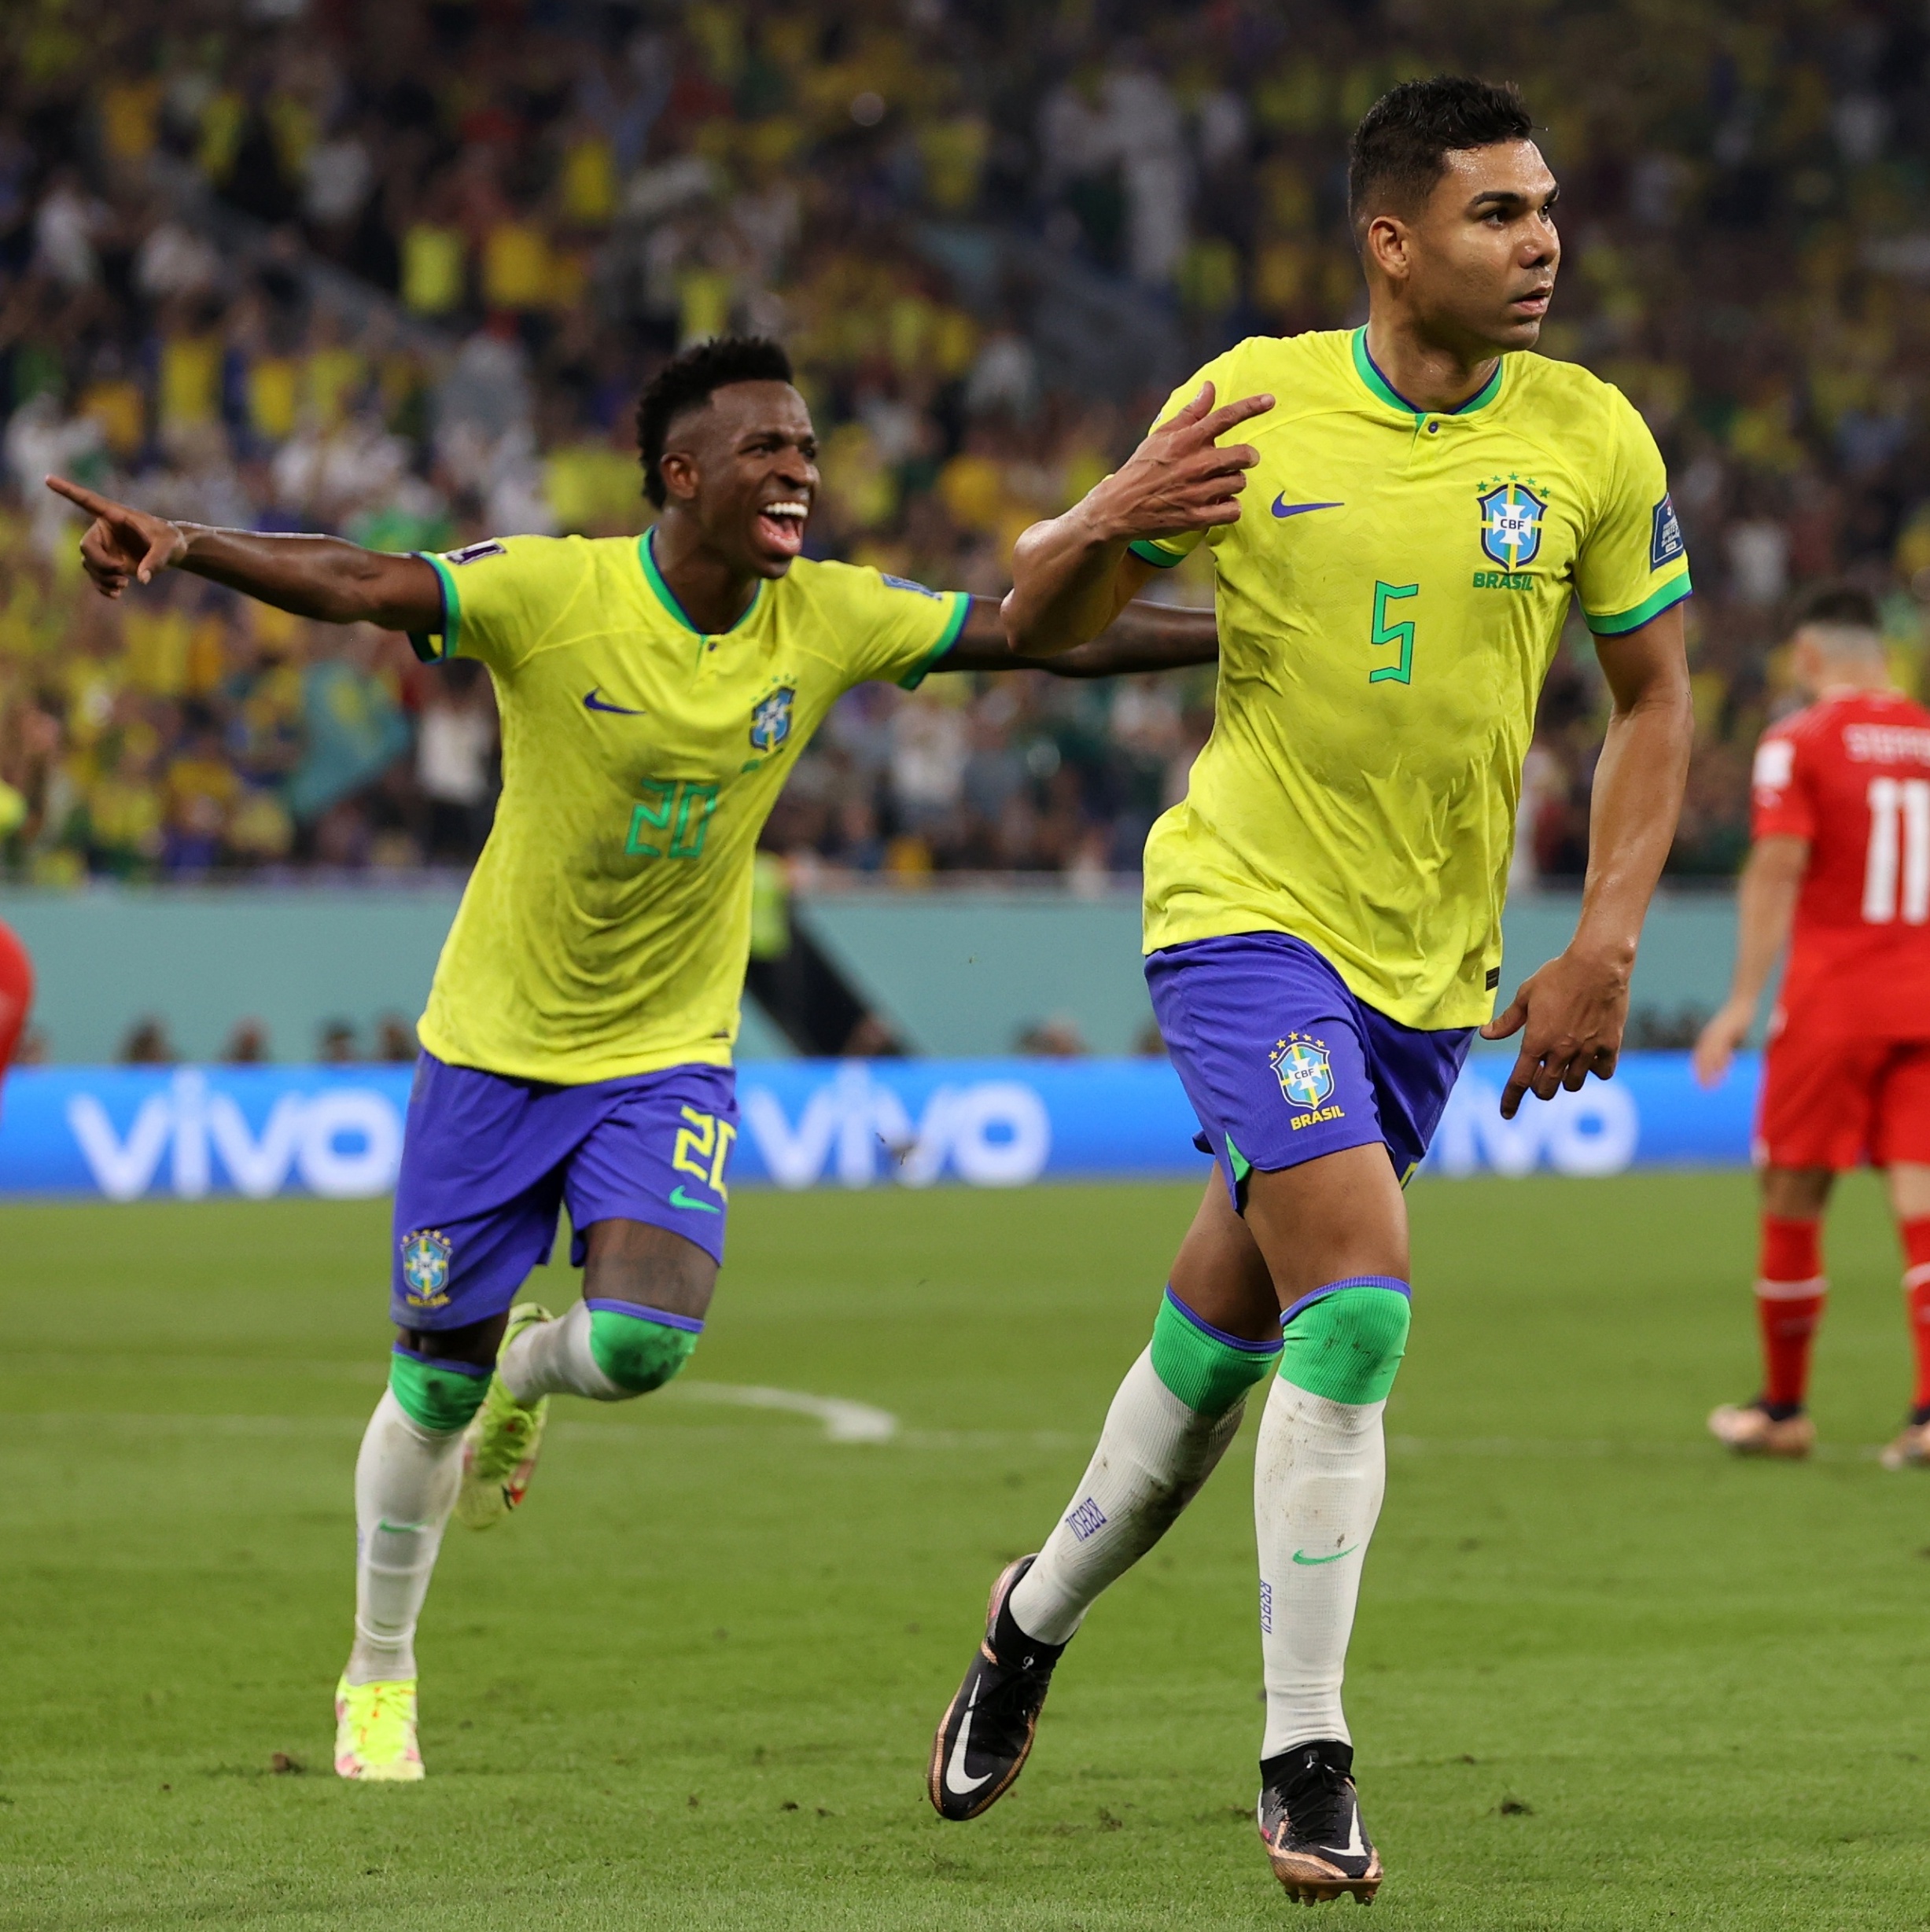 PLACAR FI: Confira TODOS os RESULTADOS desta QUARTA-FEIRA de Copa do Brasil